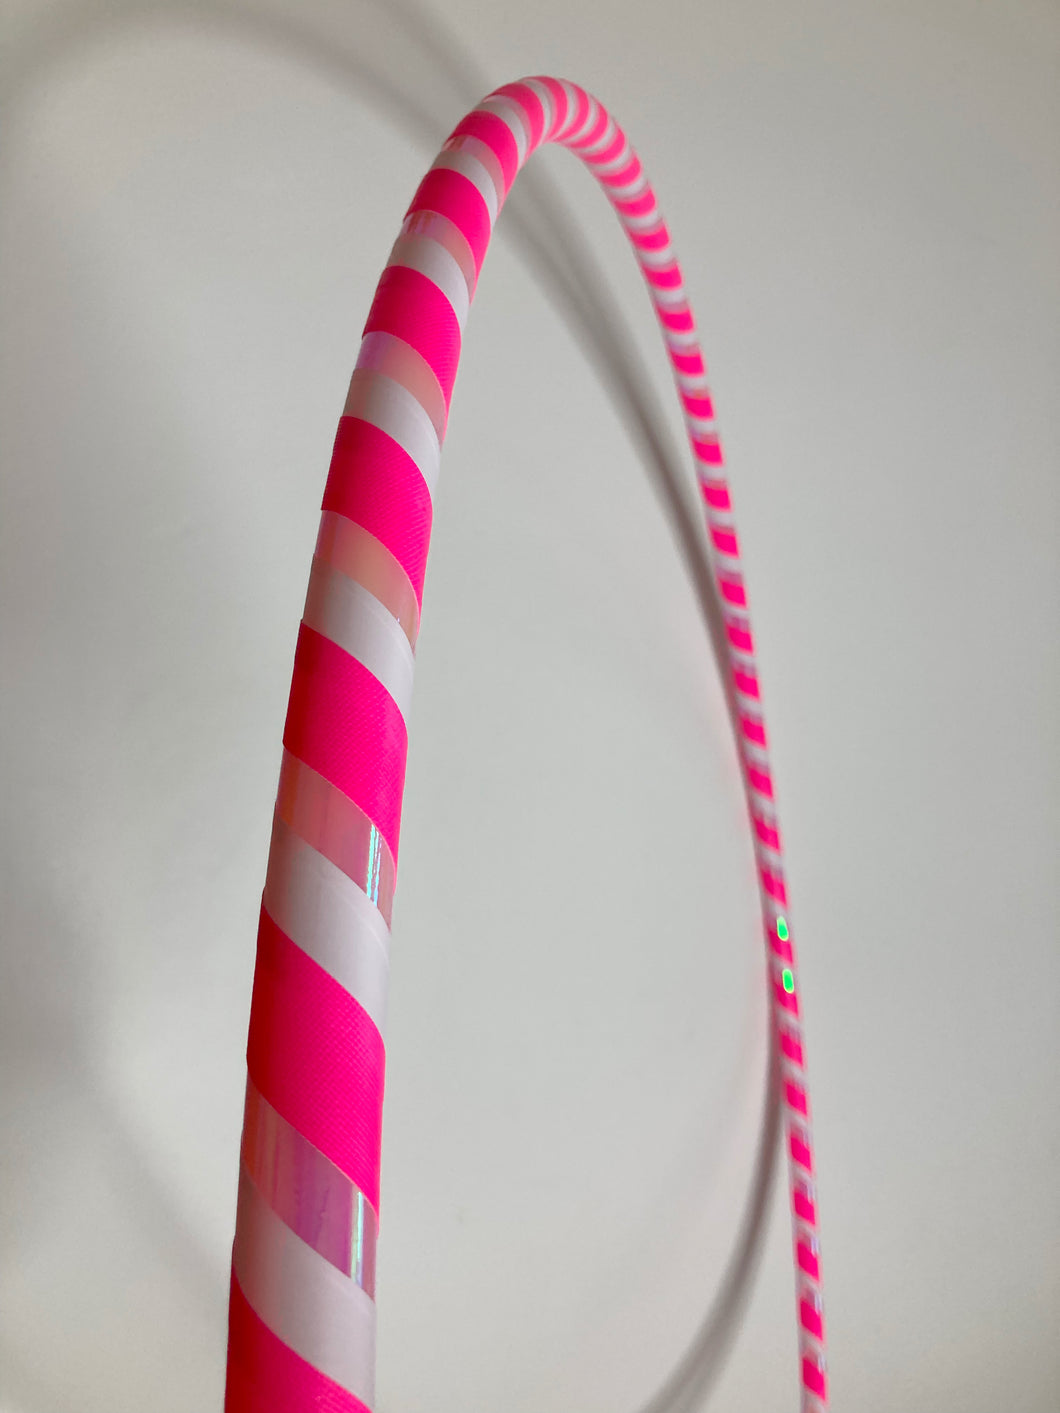 Hula hop ring (pink-uv, lyserød metallic-farveskiftende, hvid) Vælg mellem flere størrelser